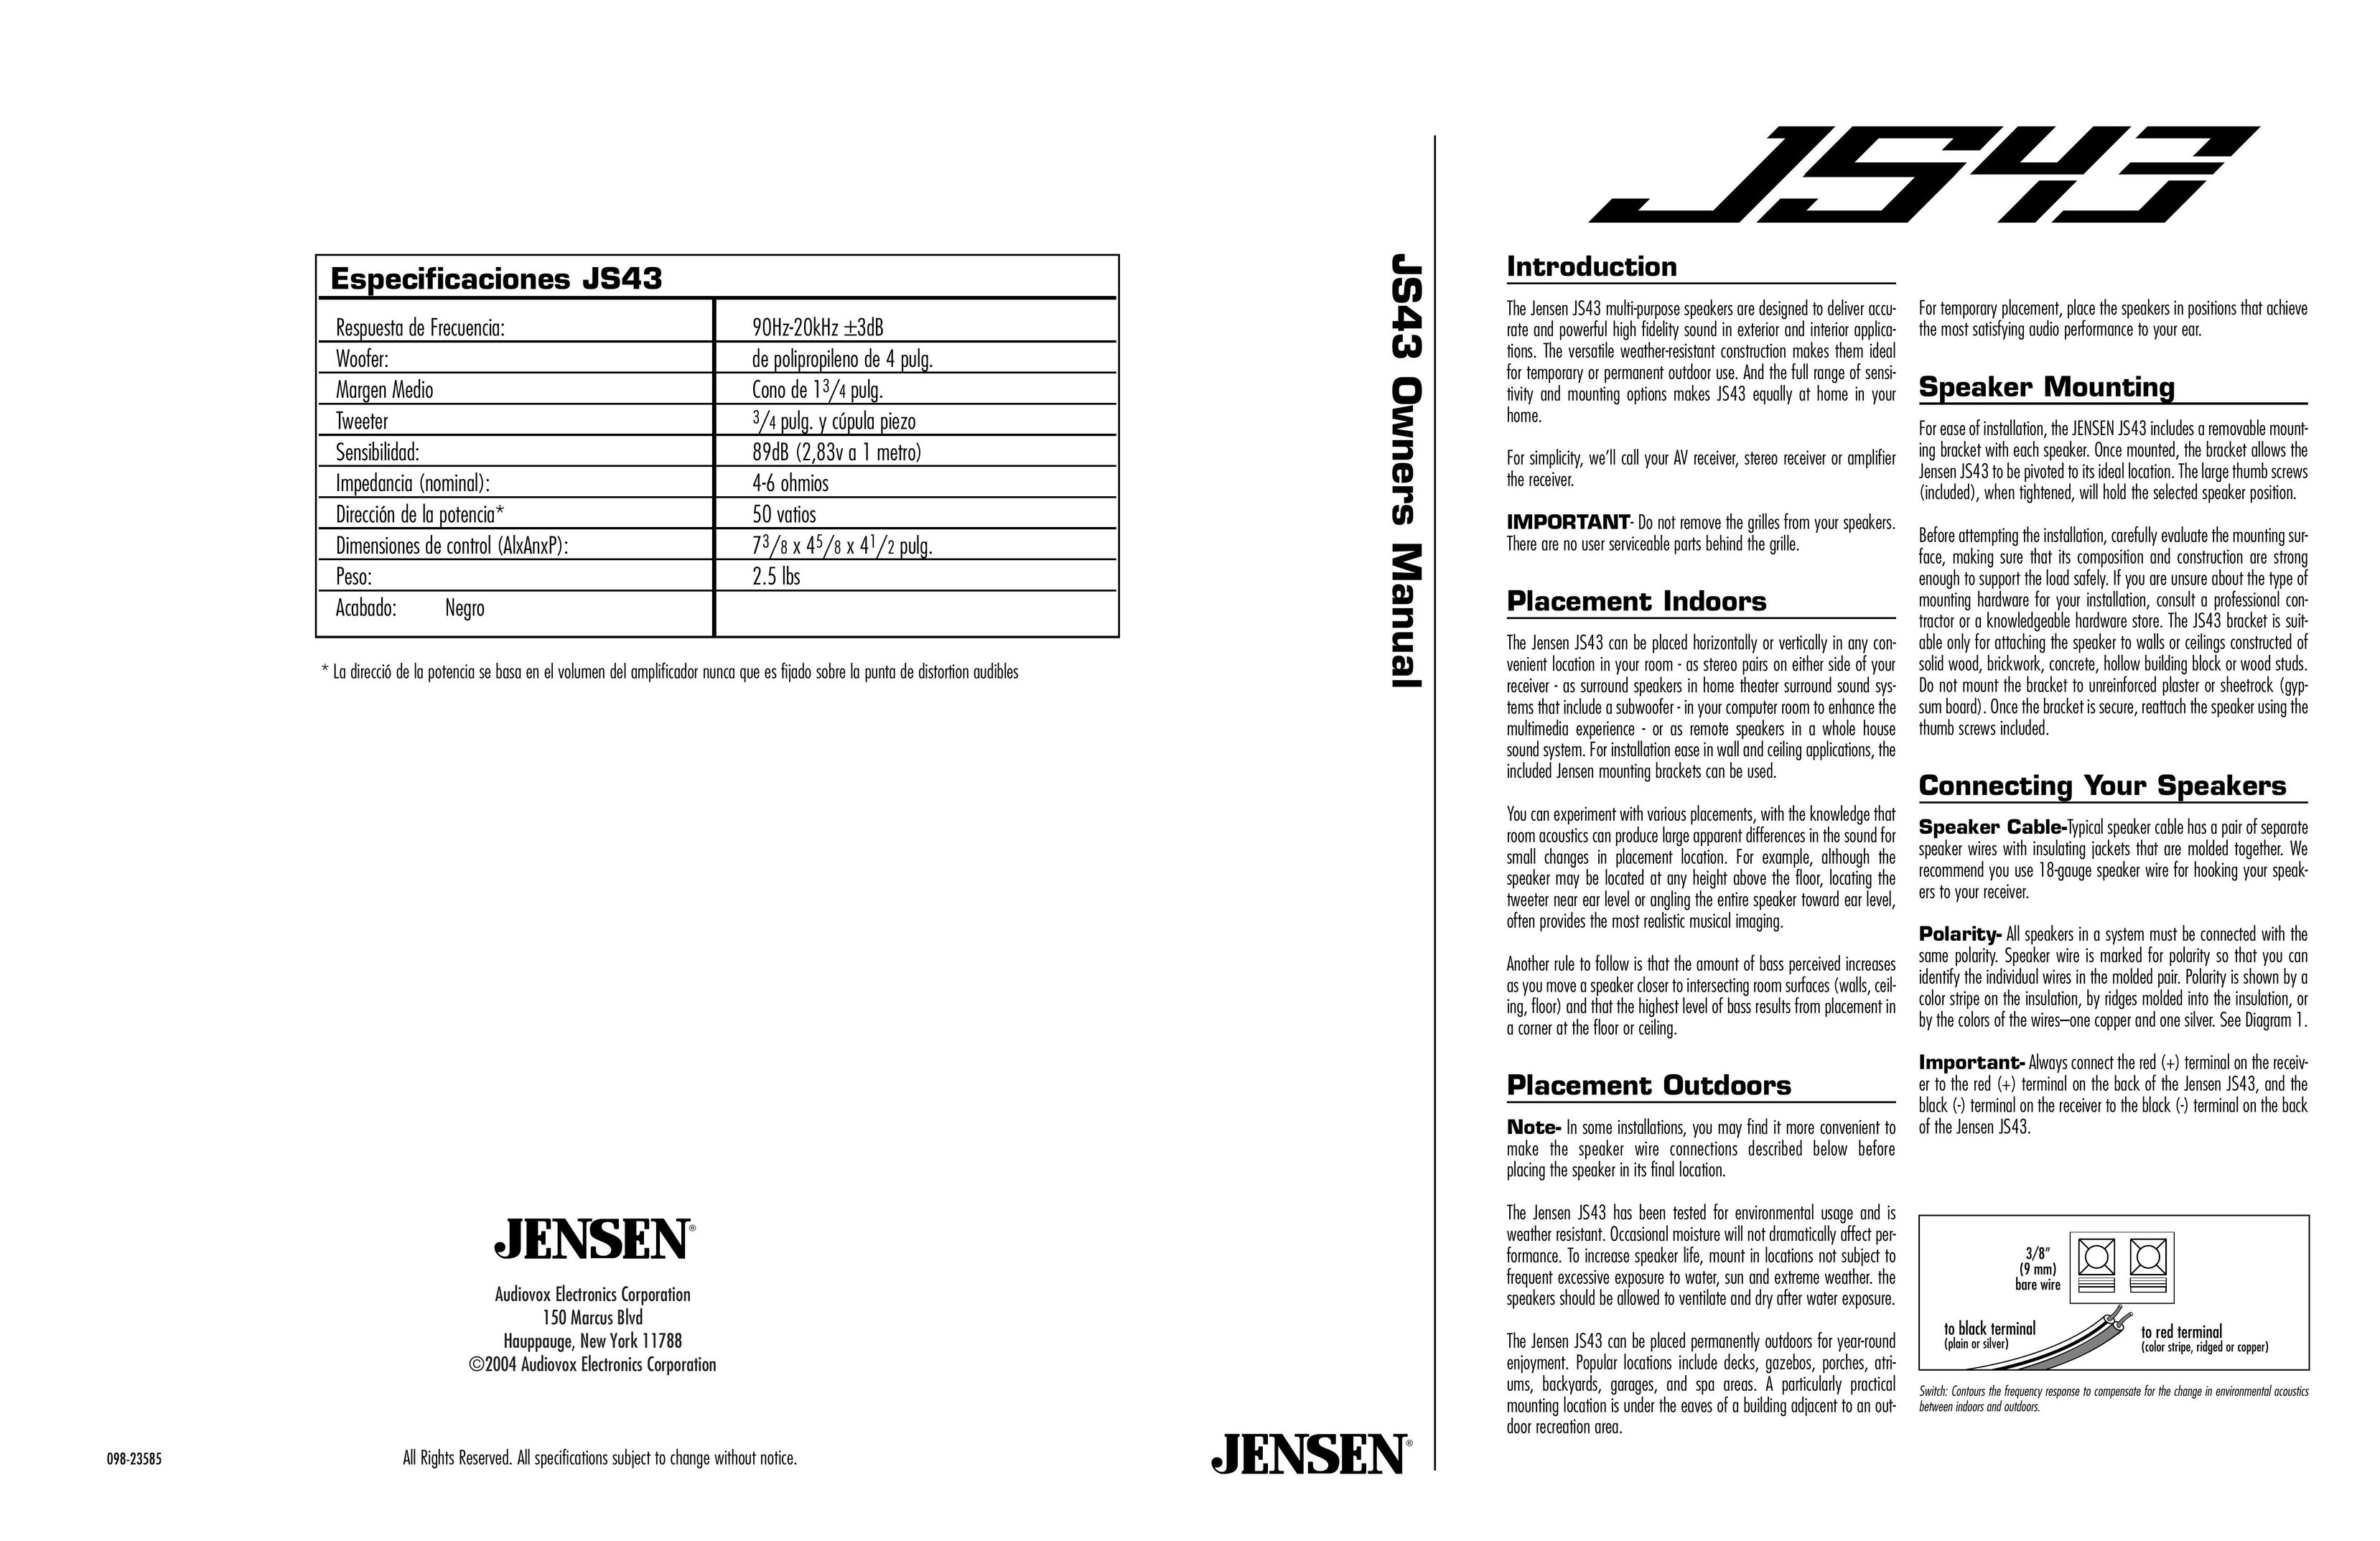 Jensen JS43 Portable Speaker User Manual